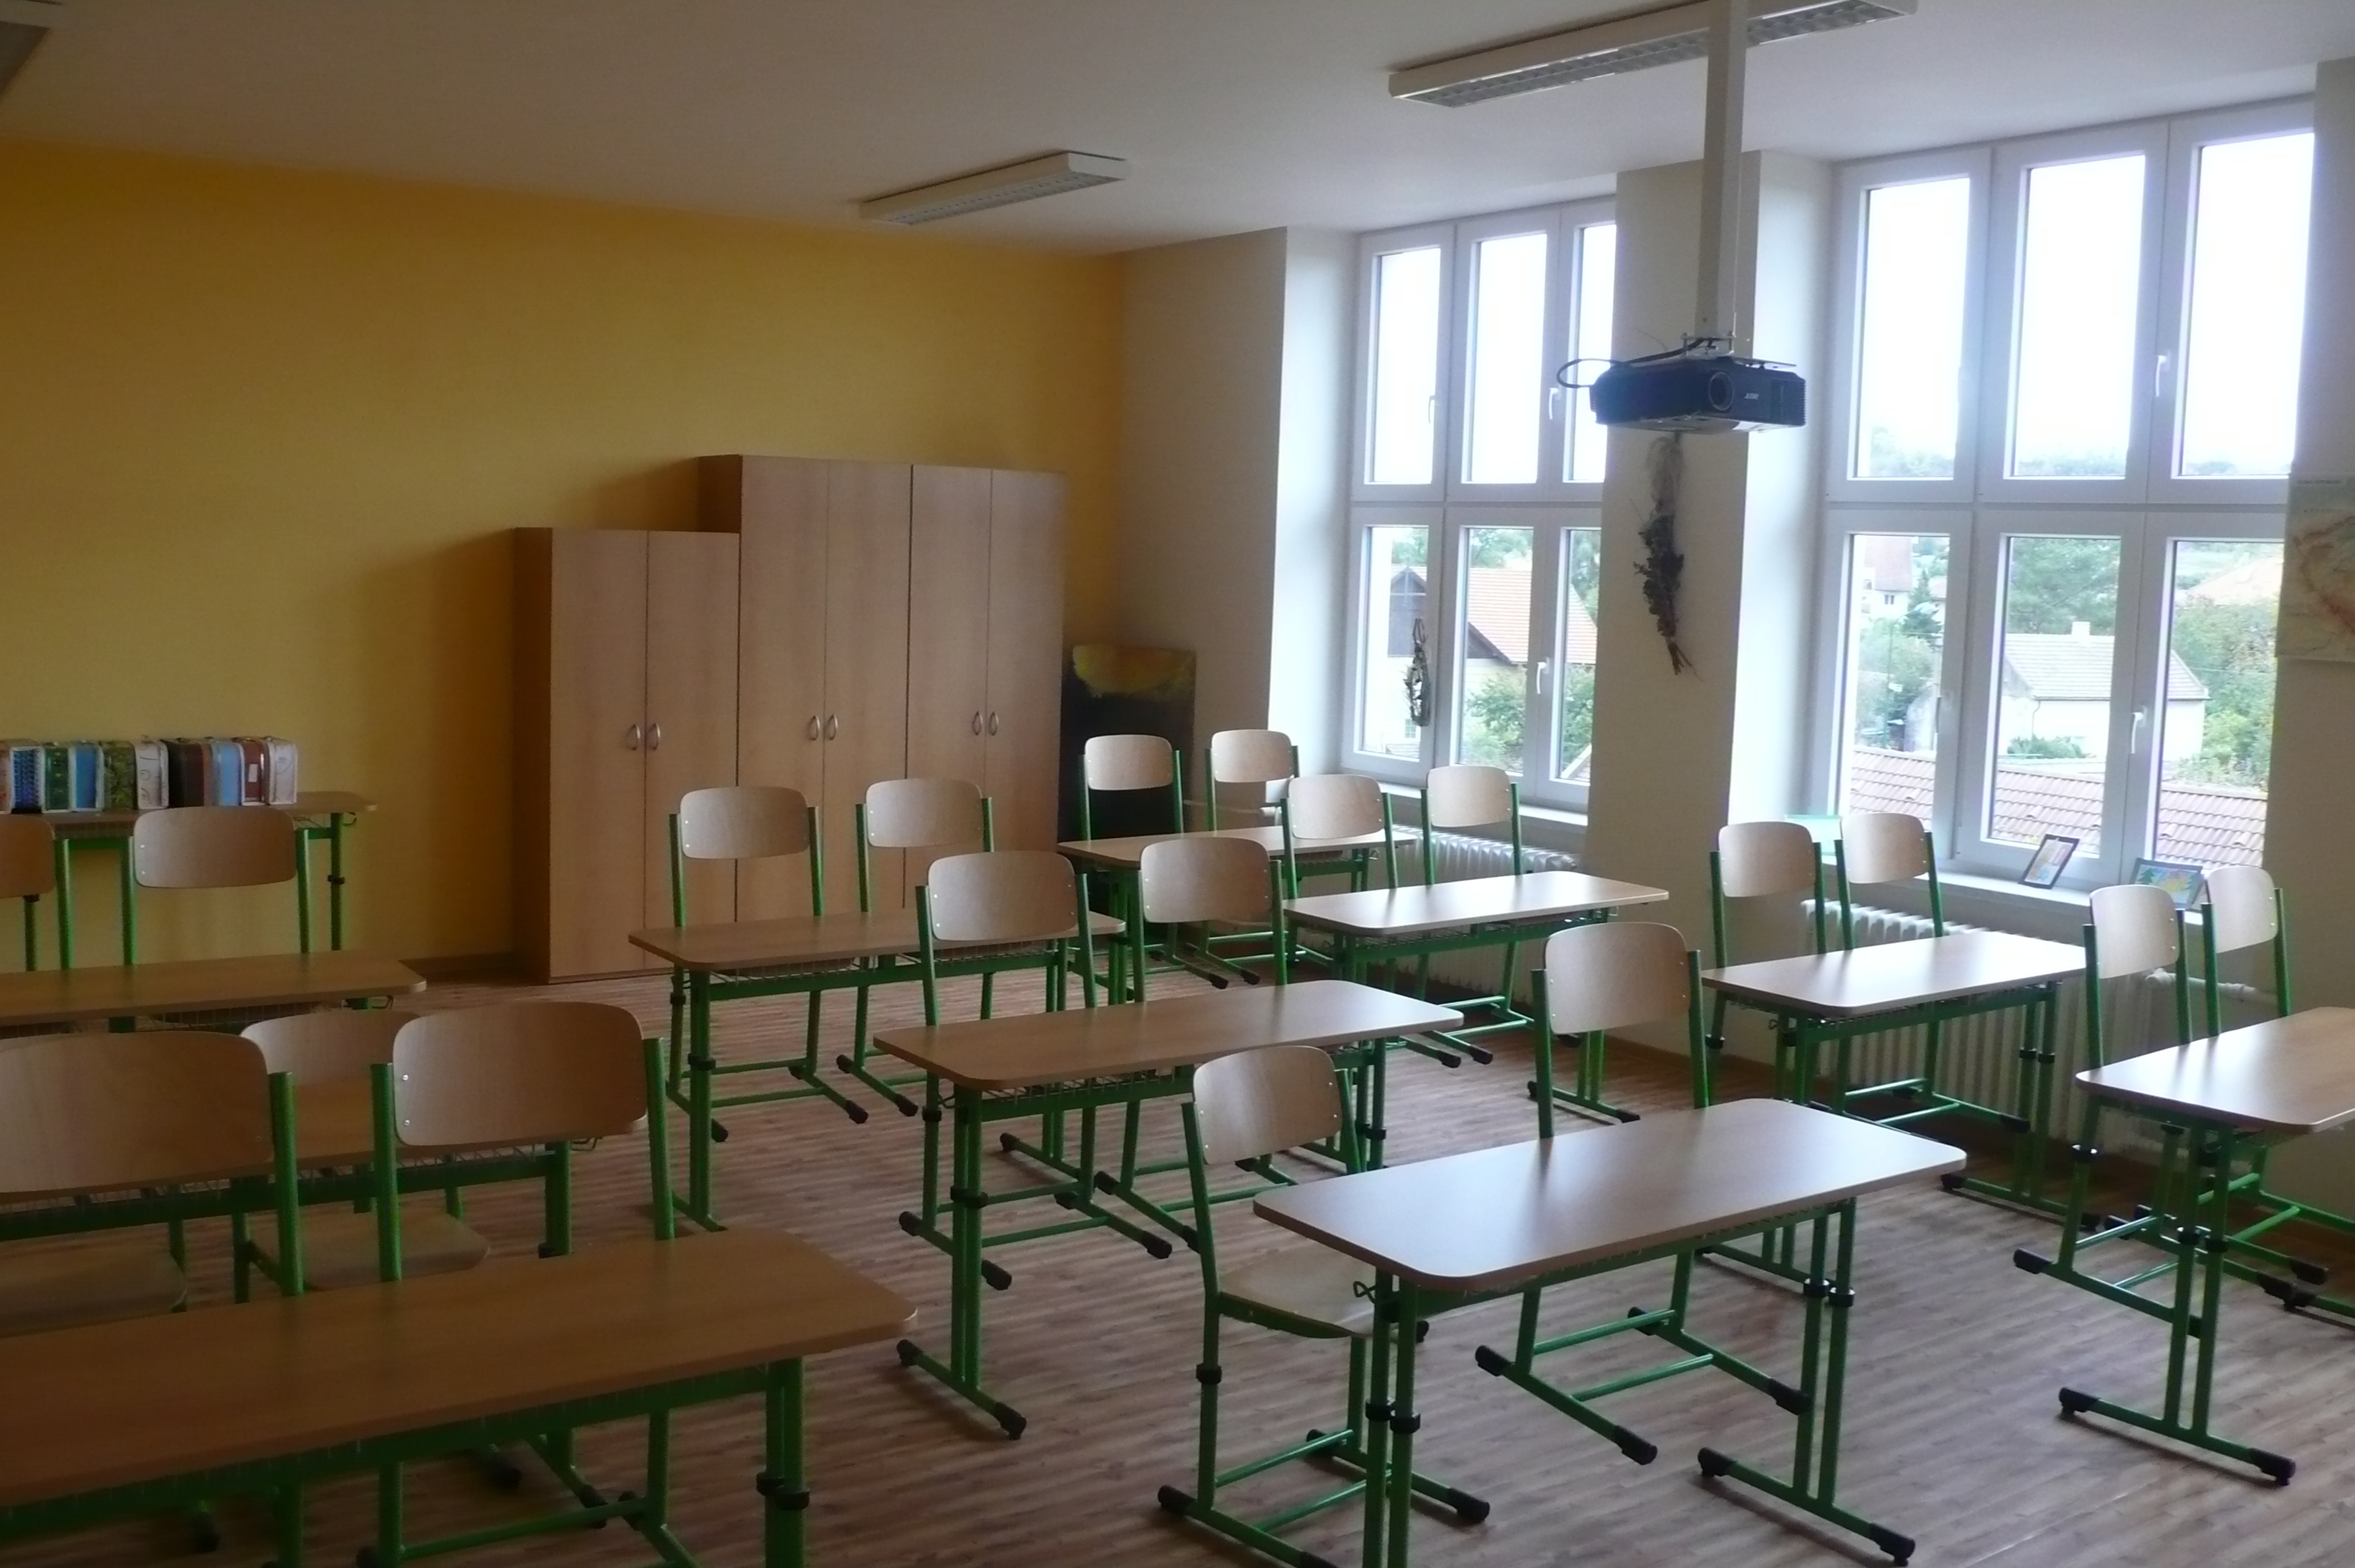 Moderní škola na venkově - rekonstrukce ZŠ v Přerově nad Labem